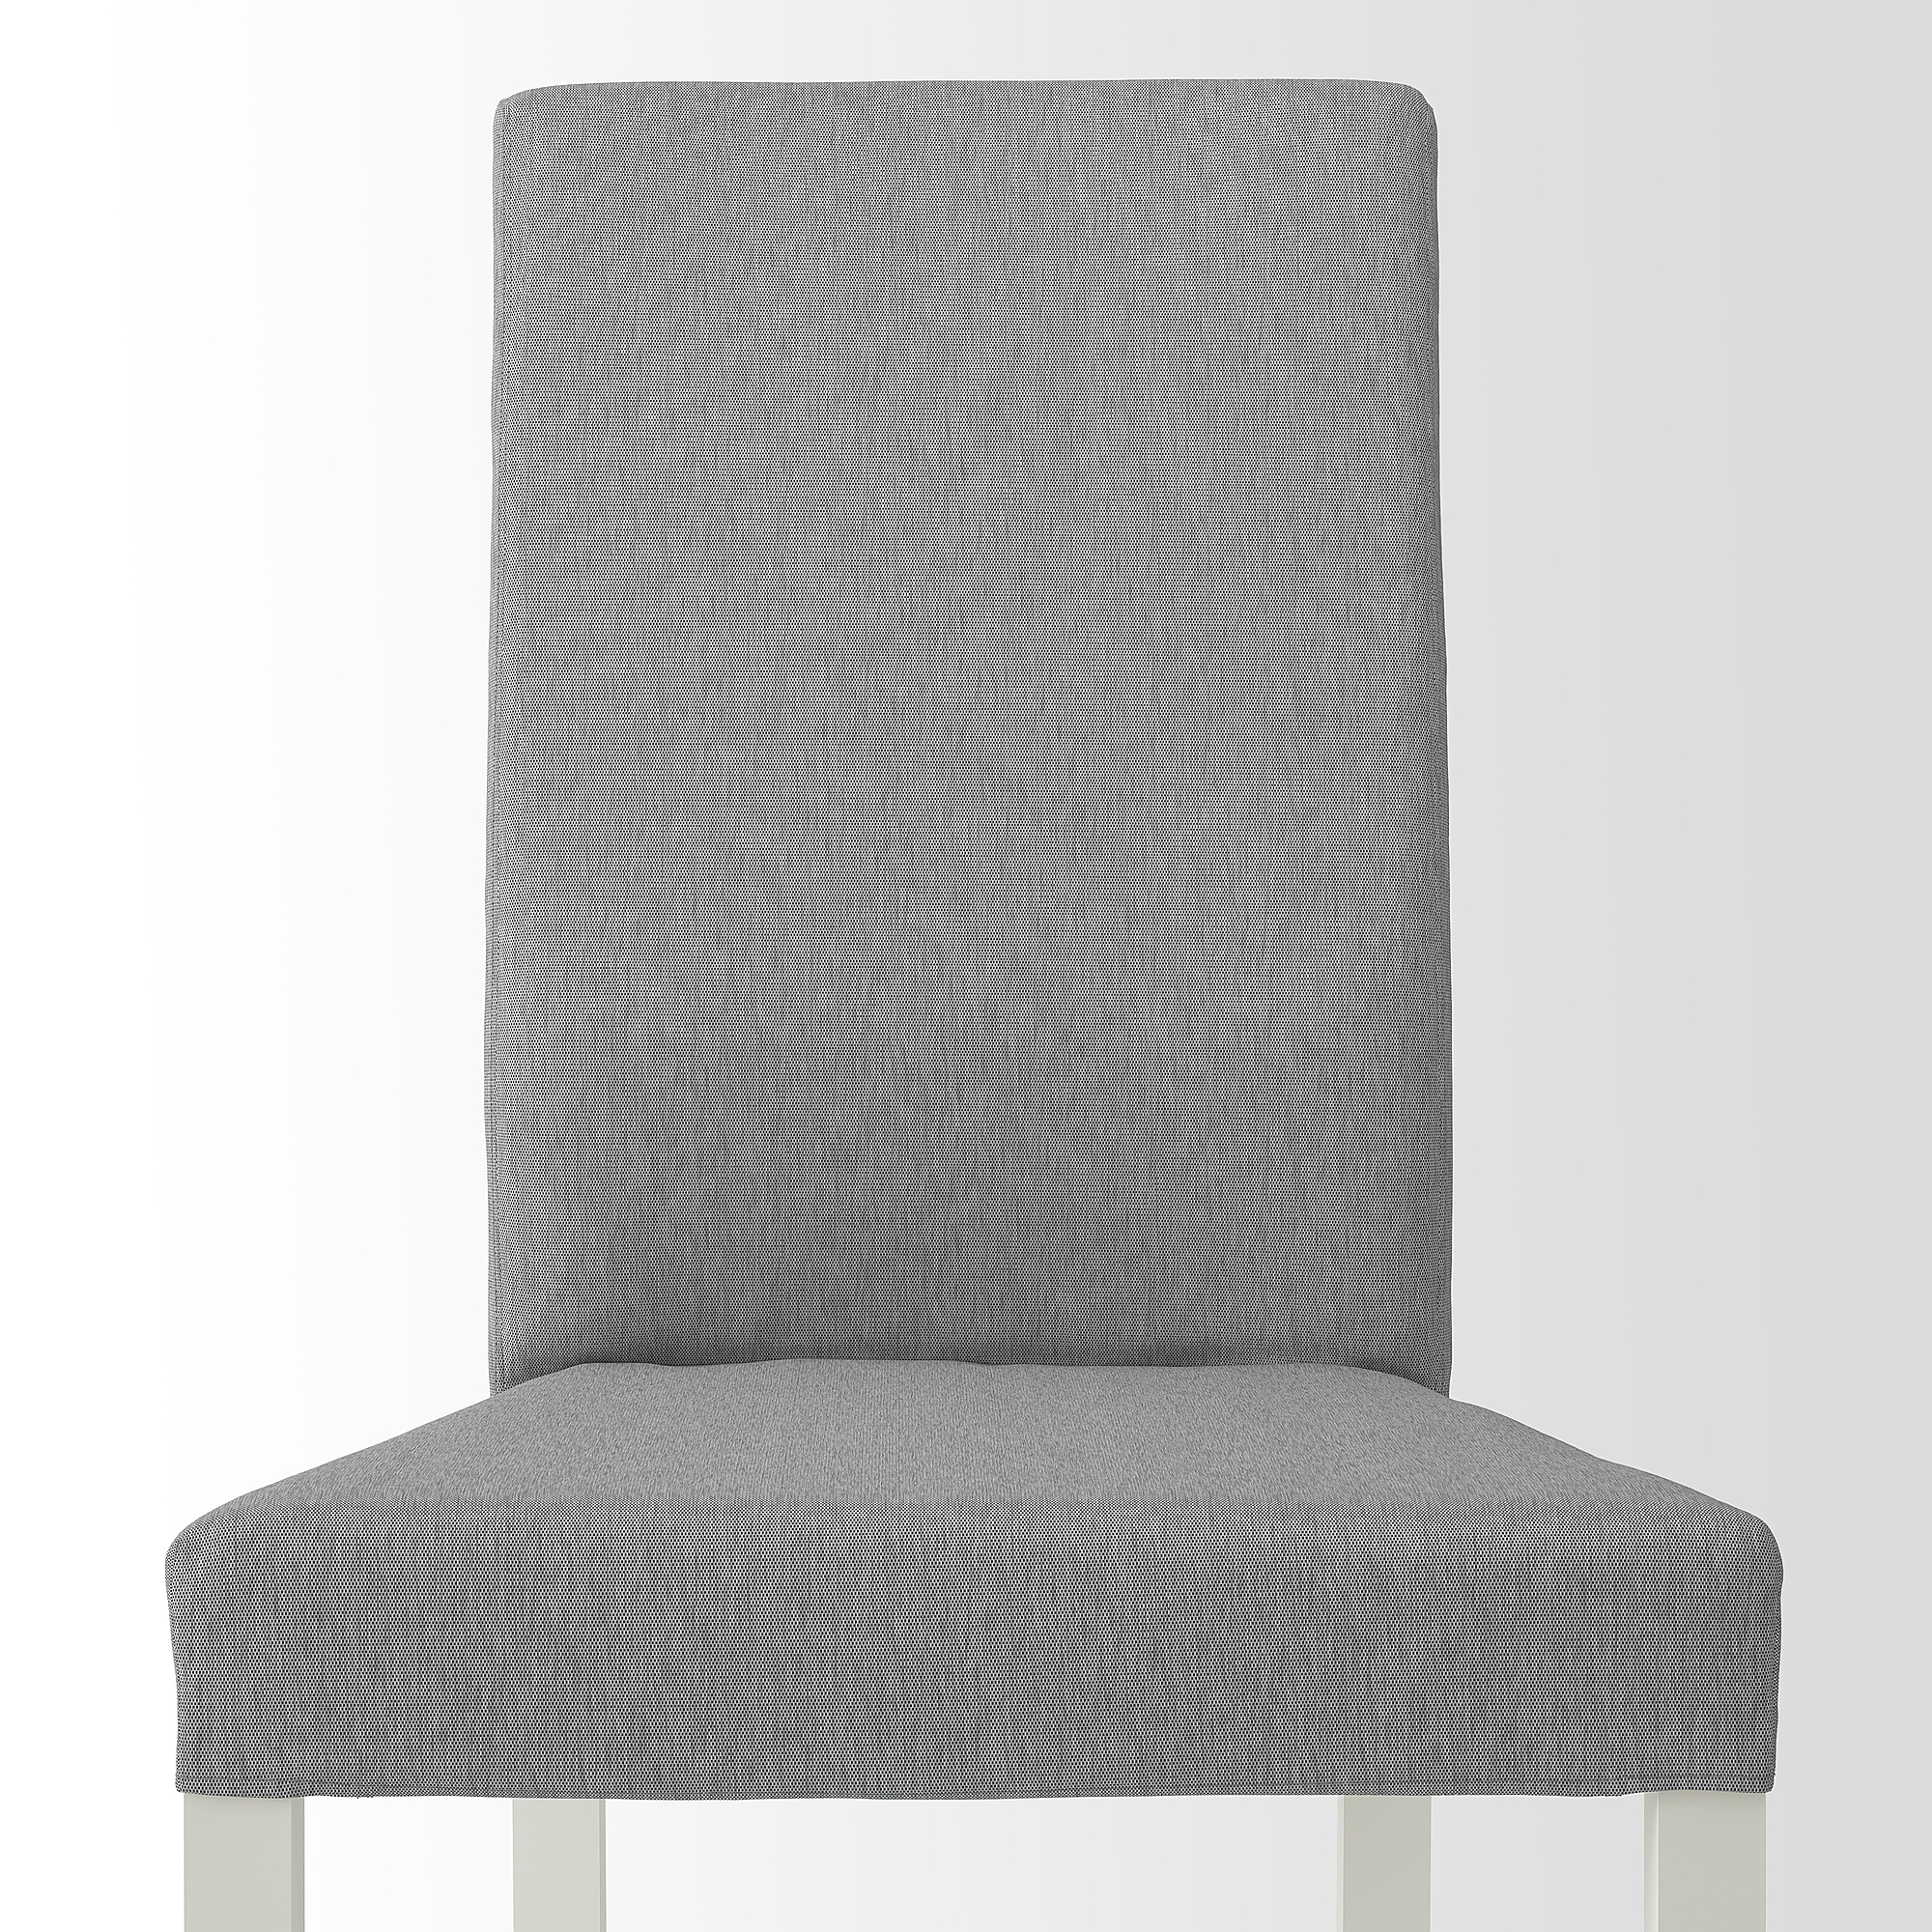 KÄTTIL chair